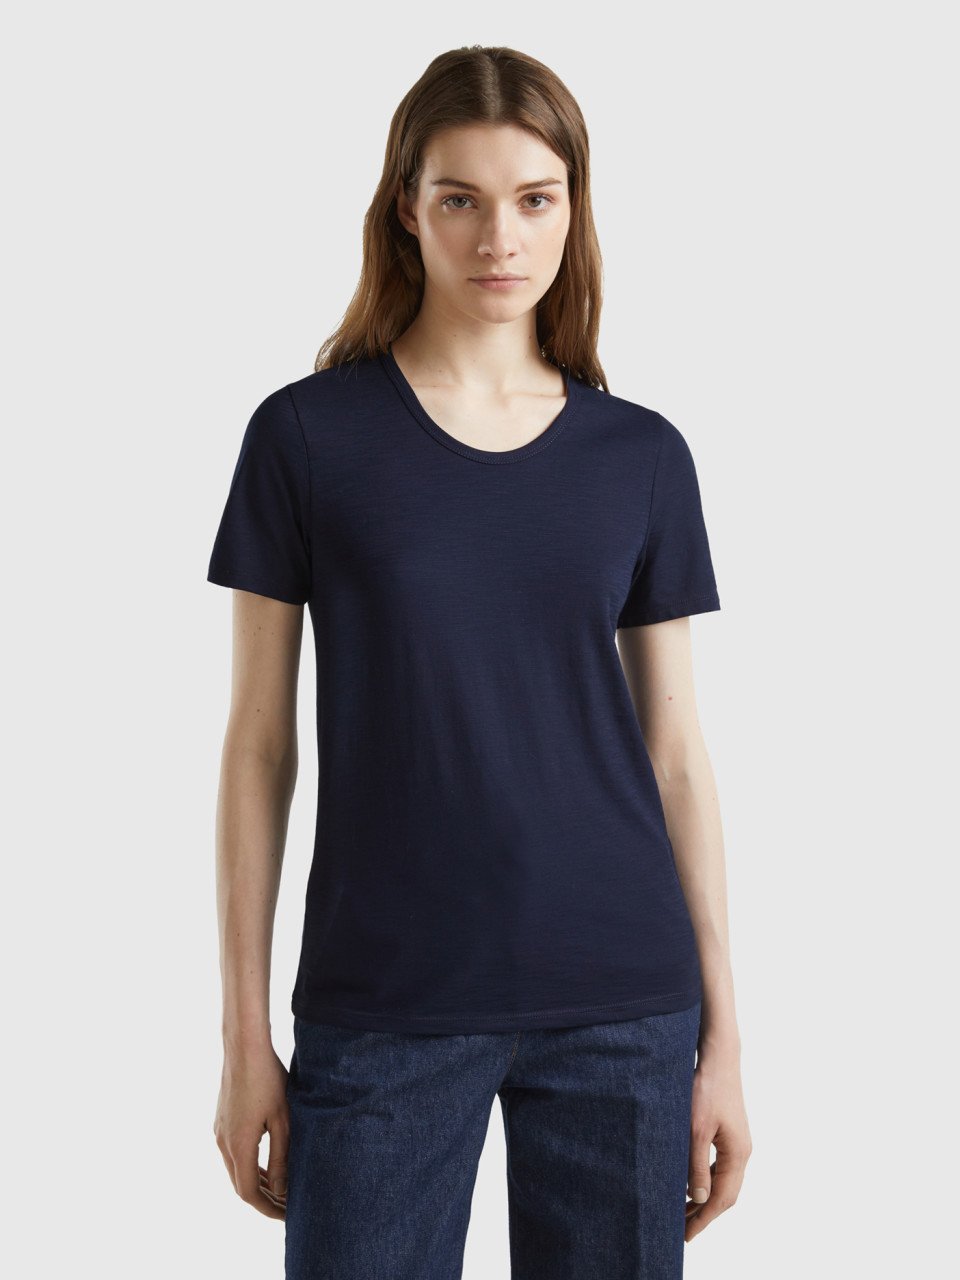 Benetton, Short Sleeve T-shirt Lightweight Cotton, Dark Blue, Women